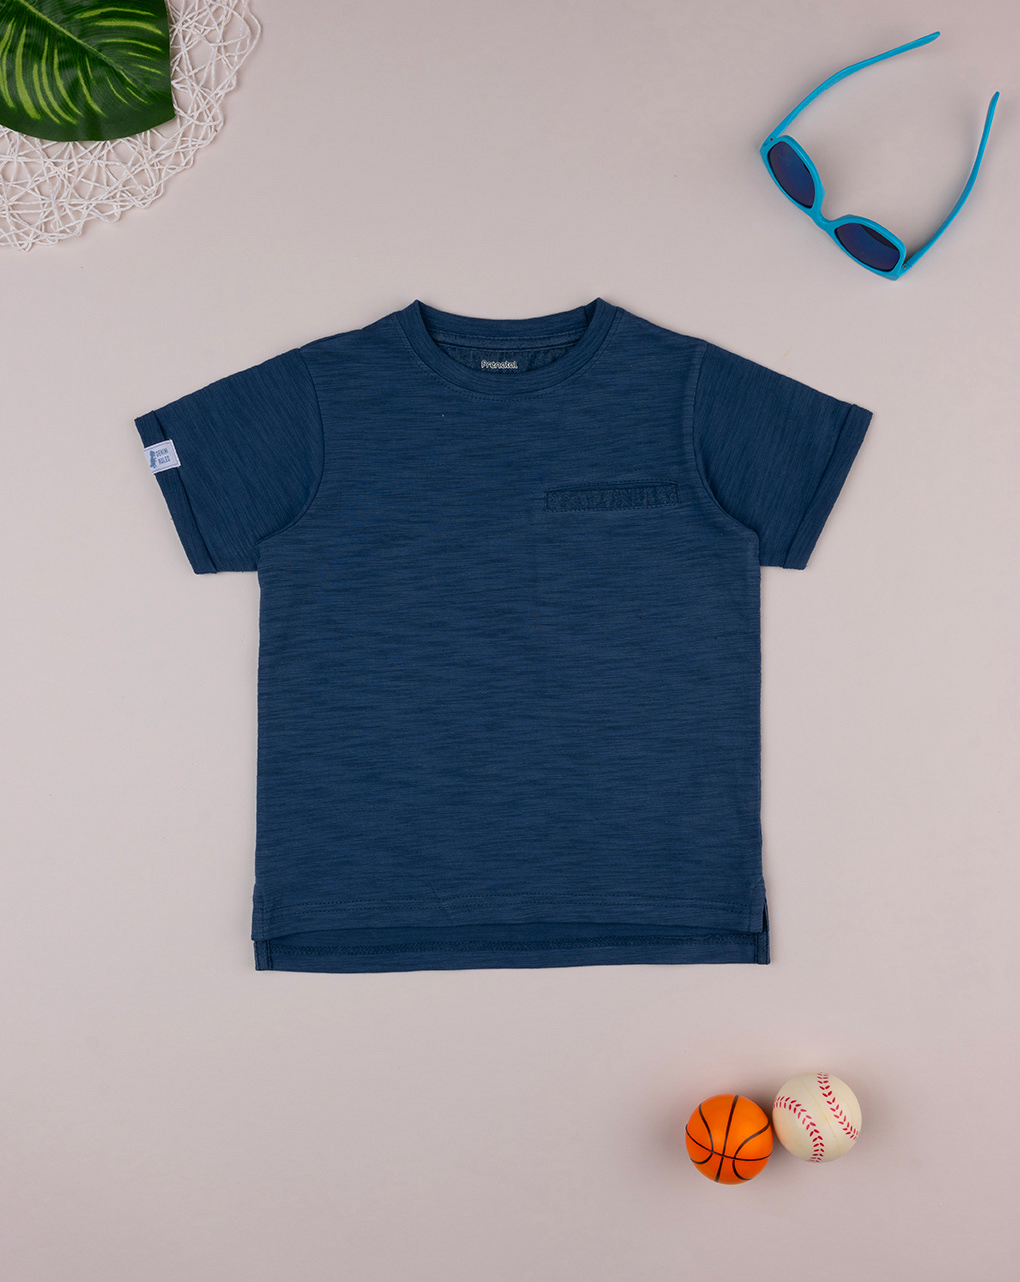 παιδικό t-shirt μπλε με τσέπη για αγόρι